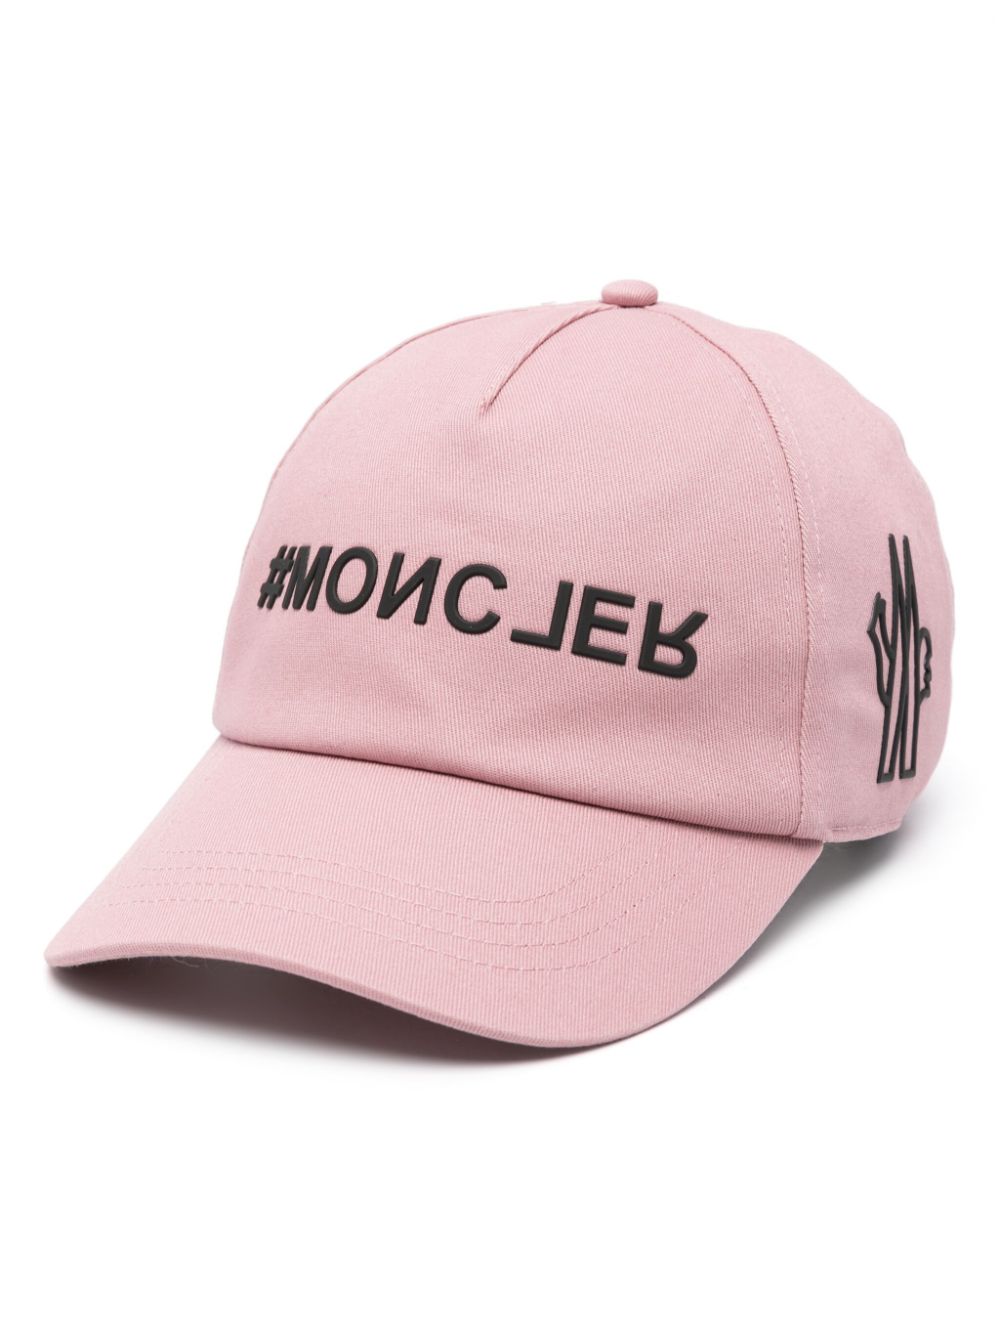 Pink logo-appliqué cotton hat<BR/><BR/><BR/>